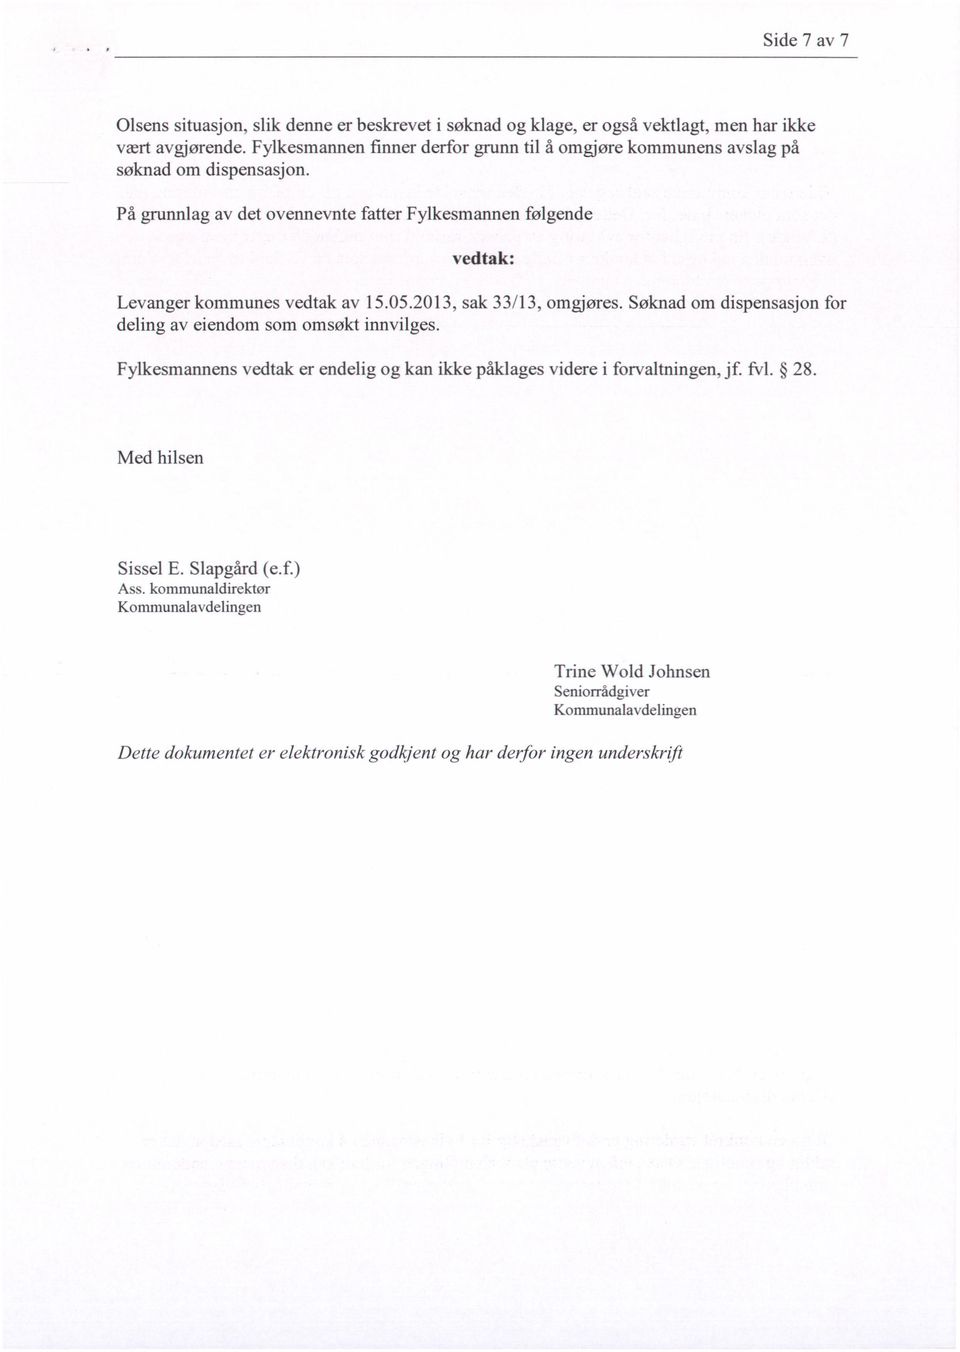 På grunnlag av det ovennevnte fatter Fylkesmannen følgende vedtak: Levanger kommunes vedtak av 15.05.2013, sak 33/13, omgjøres.